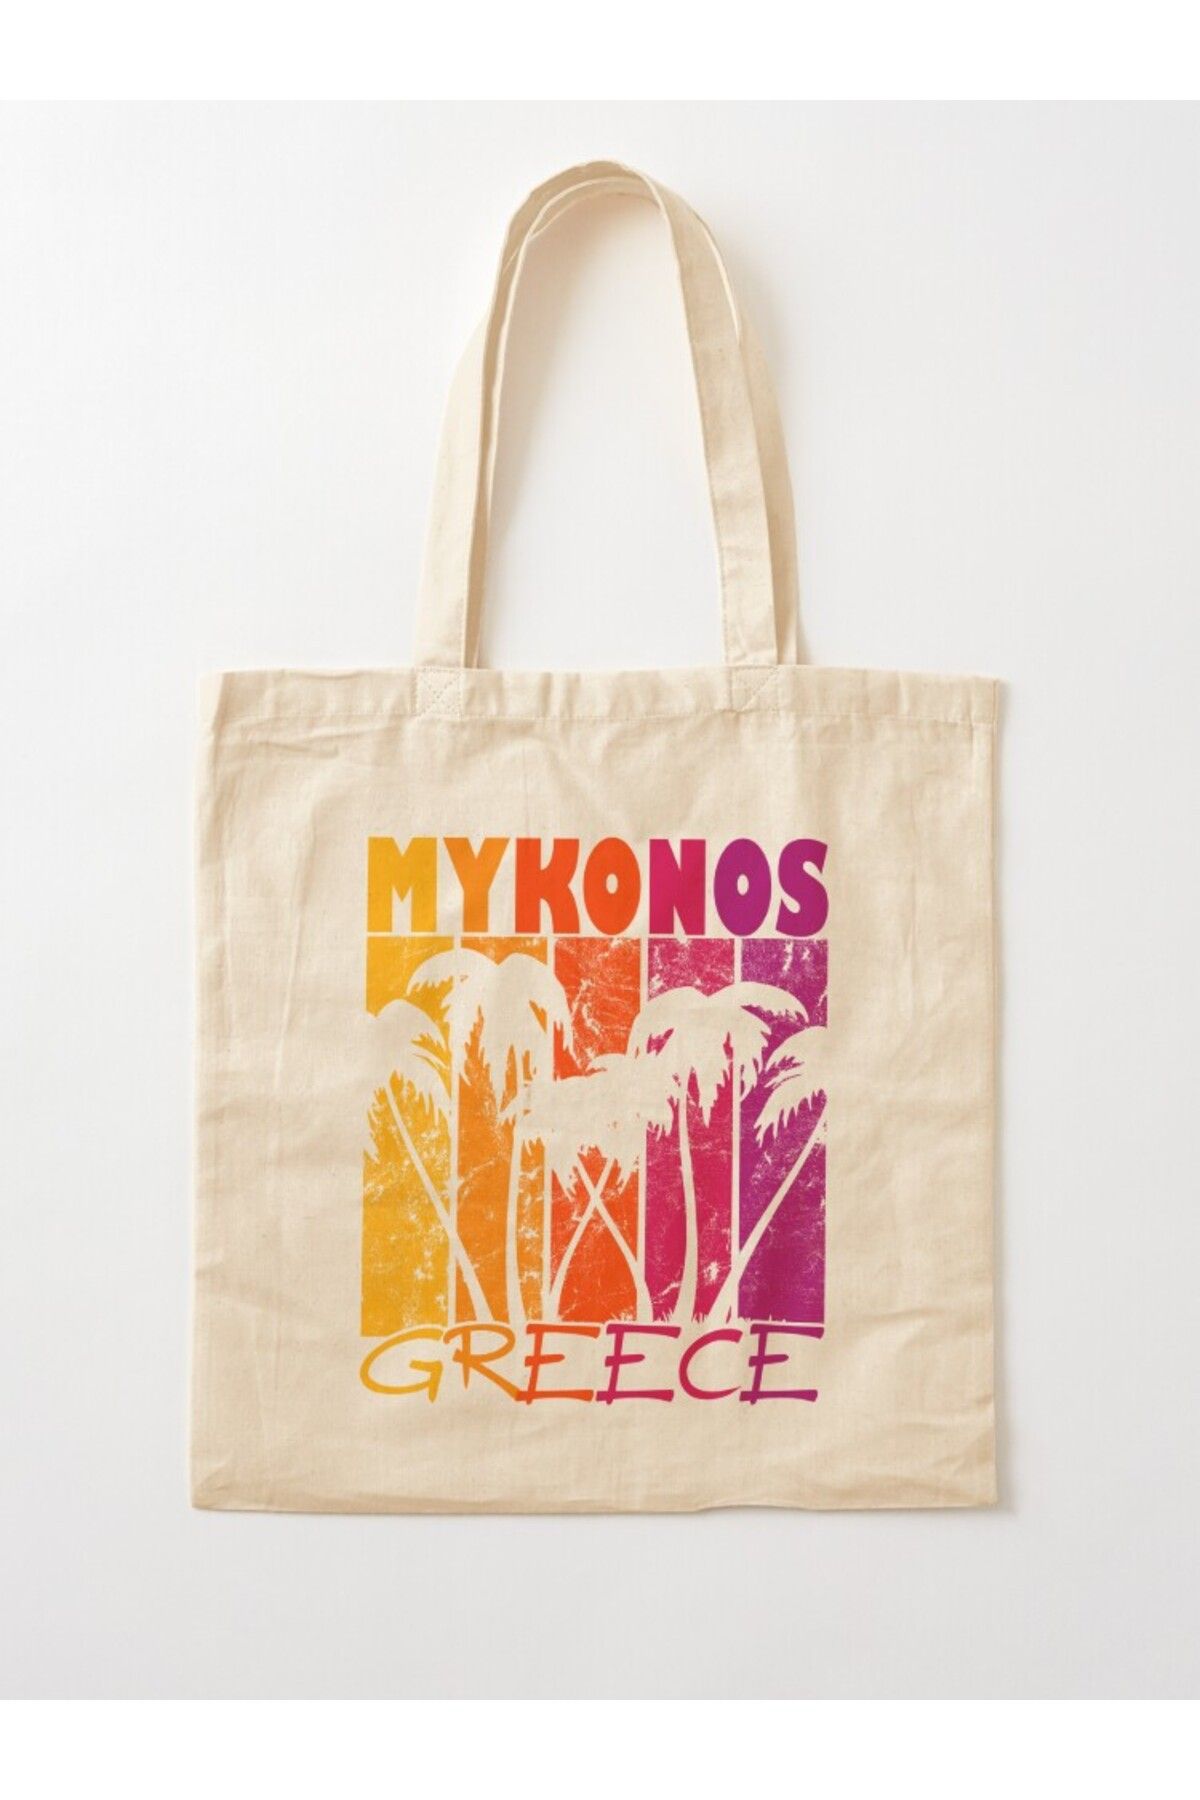 w house Körüklü Bez Omuz Çantası 02740 - Mykonos Greece Sunset